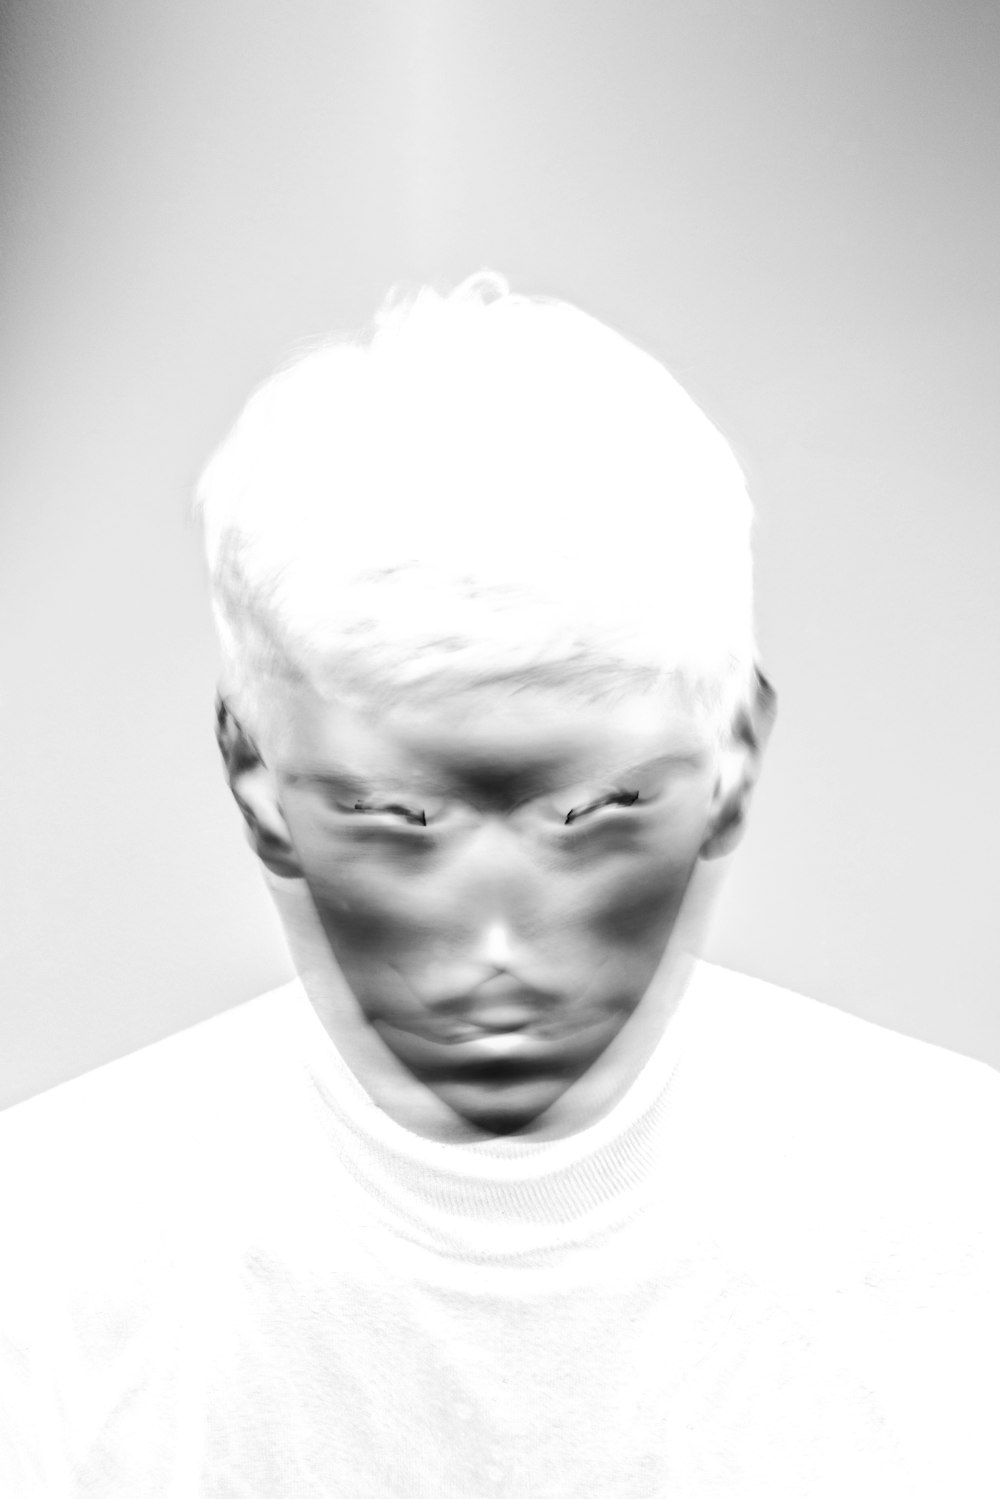 Una foto in bianco e nero del volto di un uomo